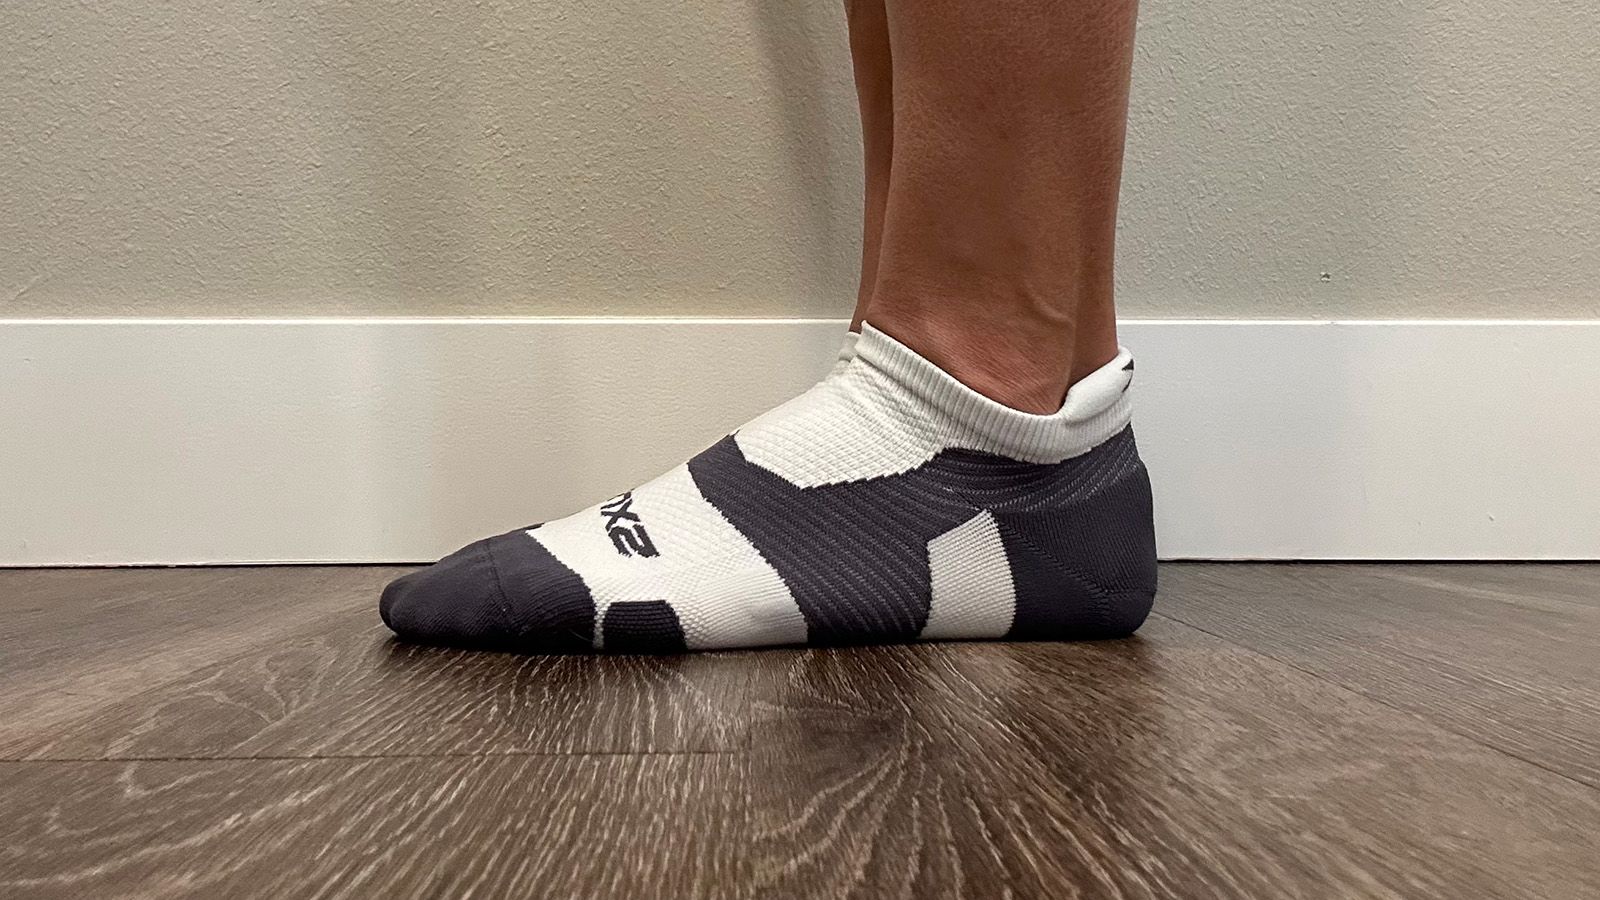 Ankle Socks 3 Pack – 2XU